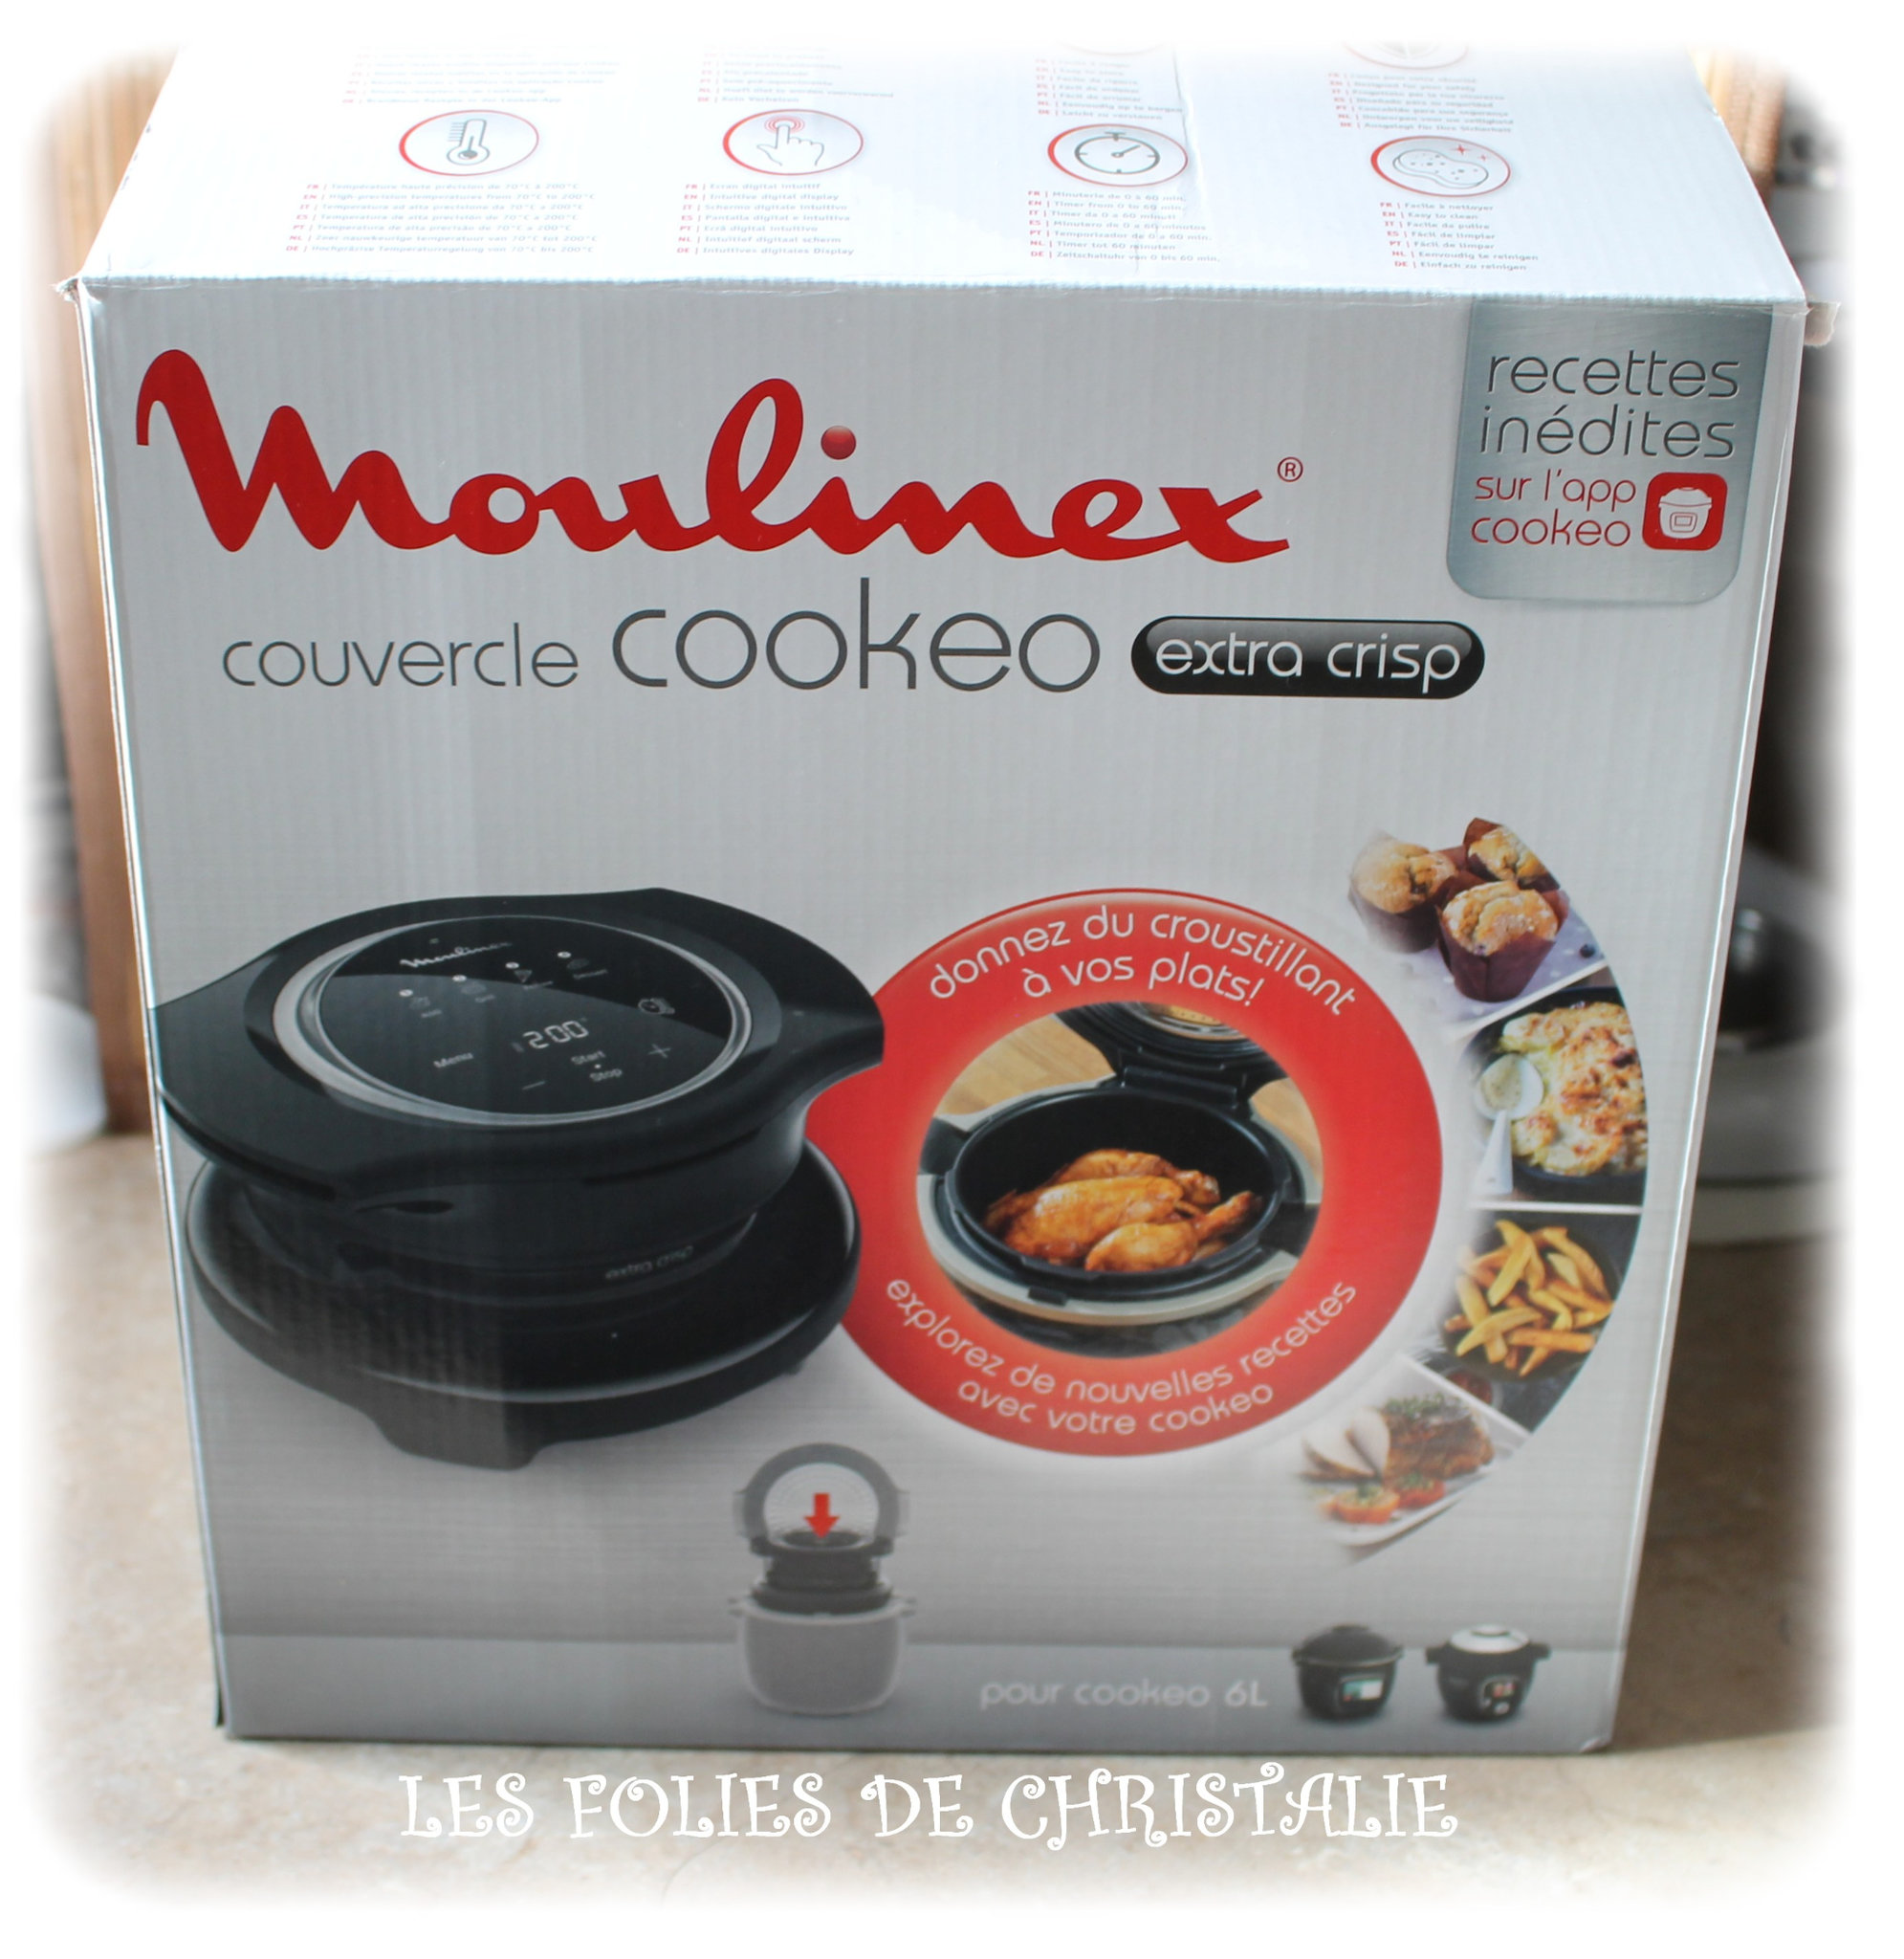 Couvercle pour Cookeo Moulinex Extra Crisp - Recettes